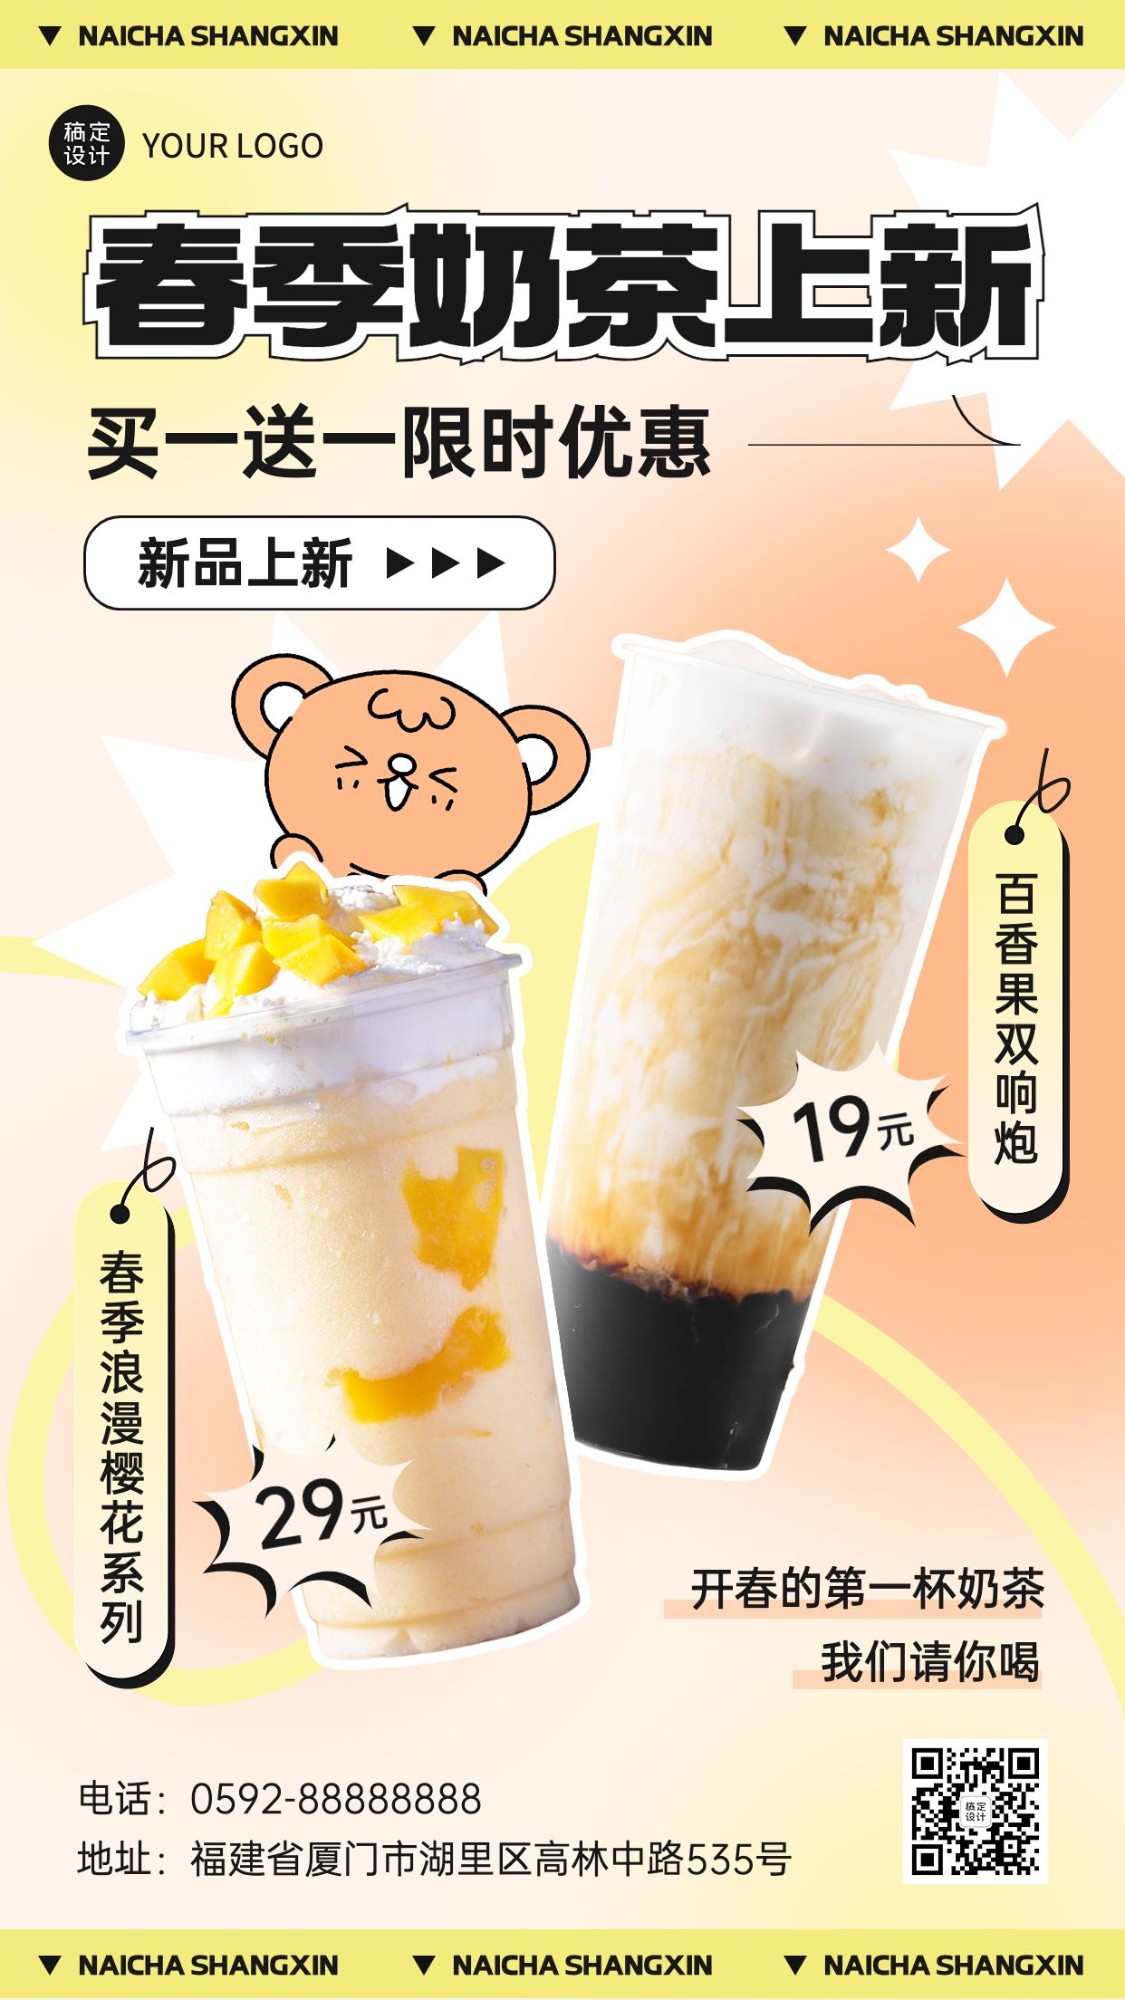 春系列餐饮美食奶茶饮品新品促销手机海报预览效果